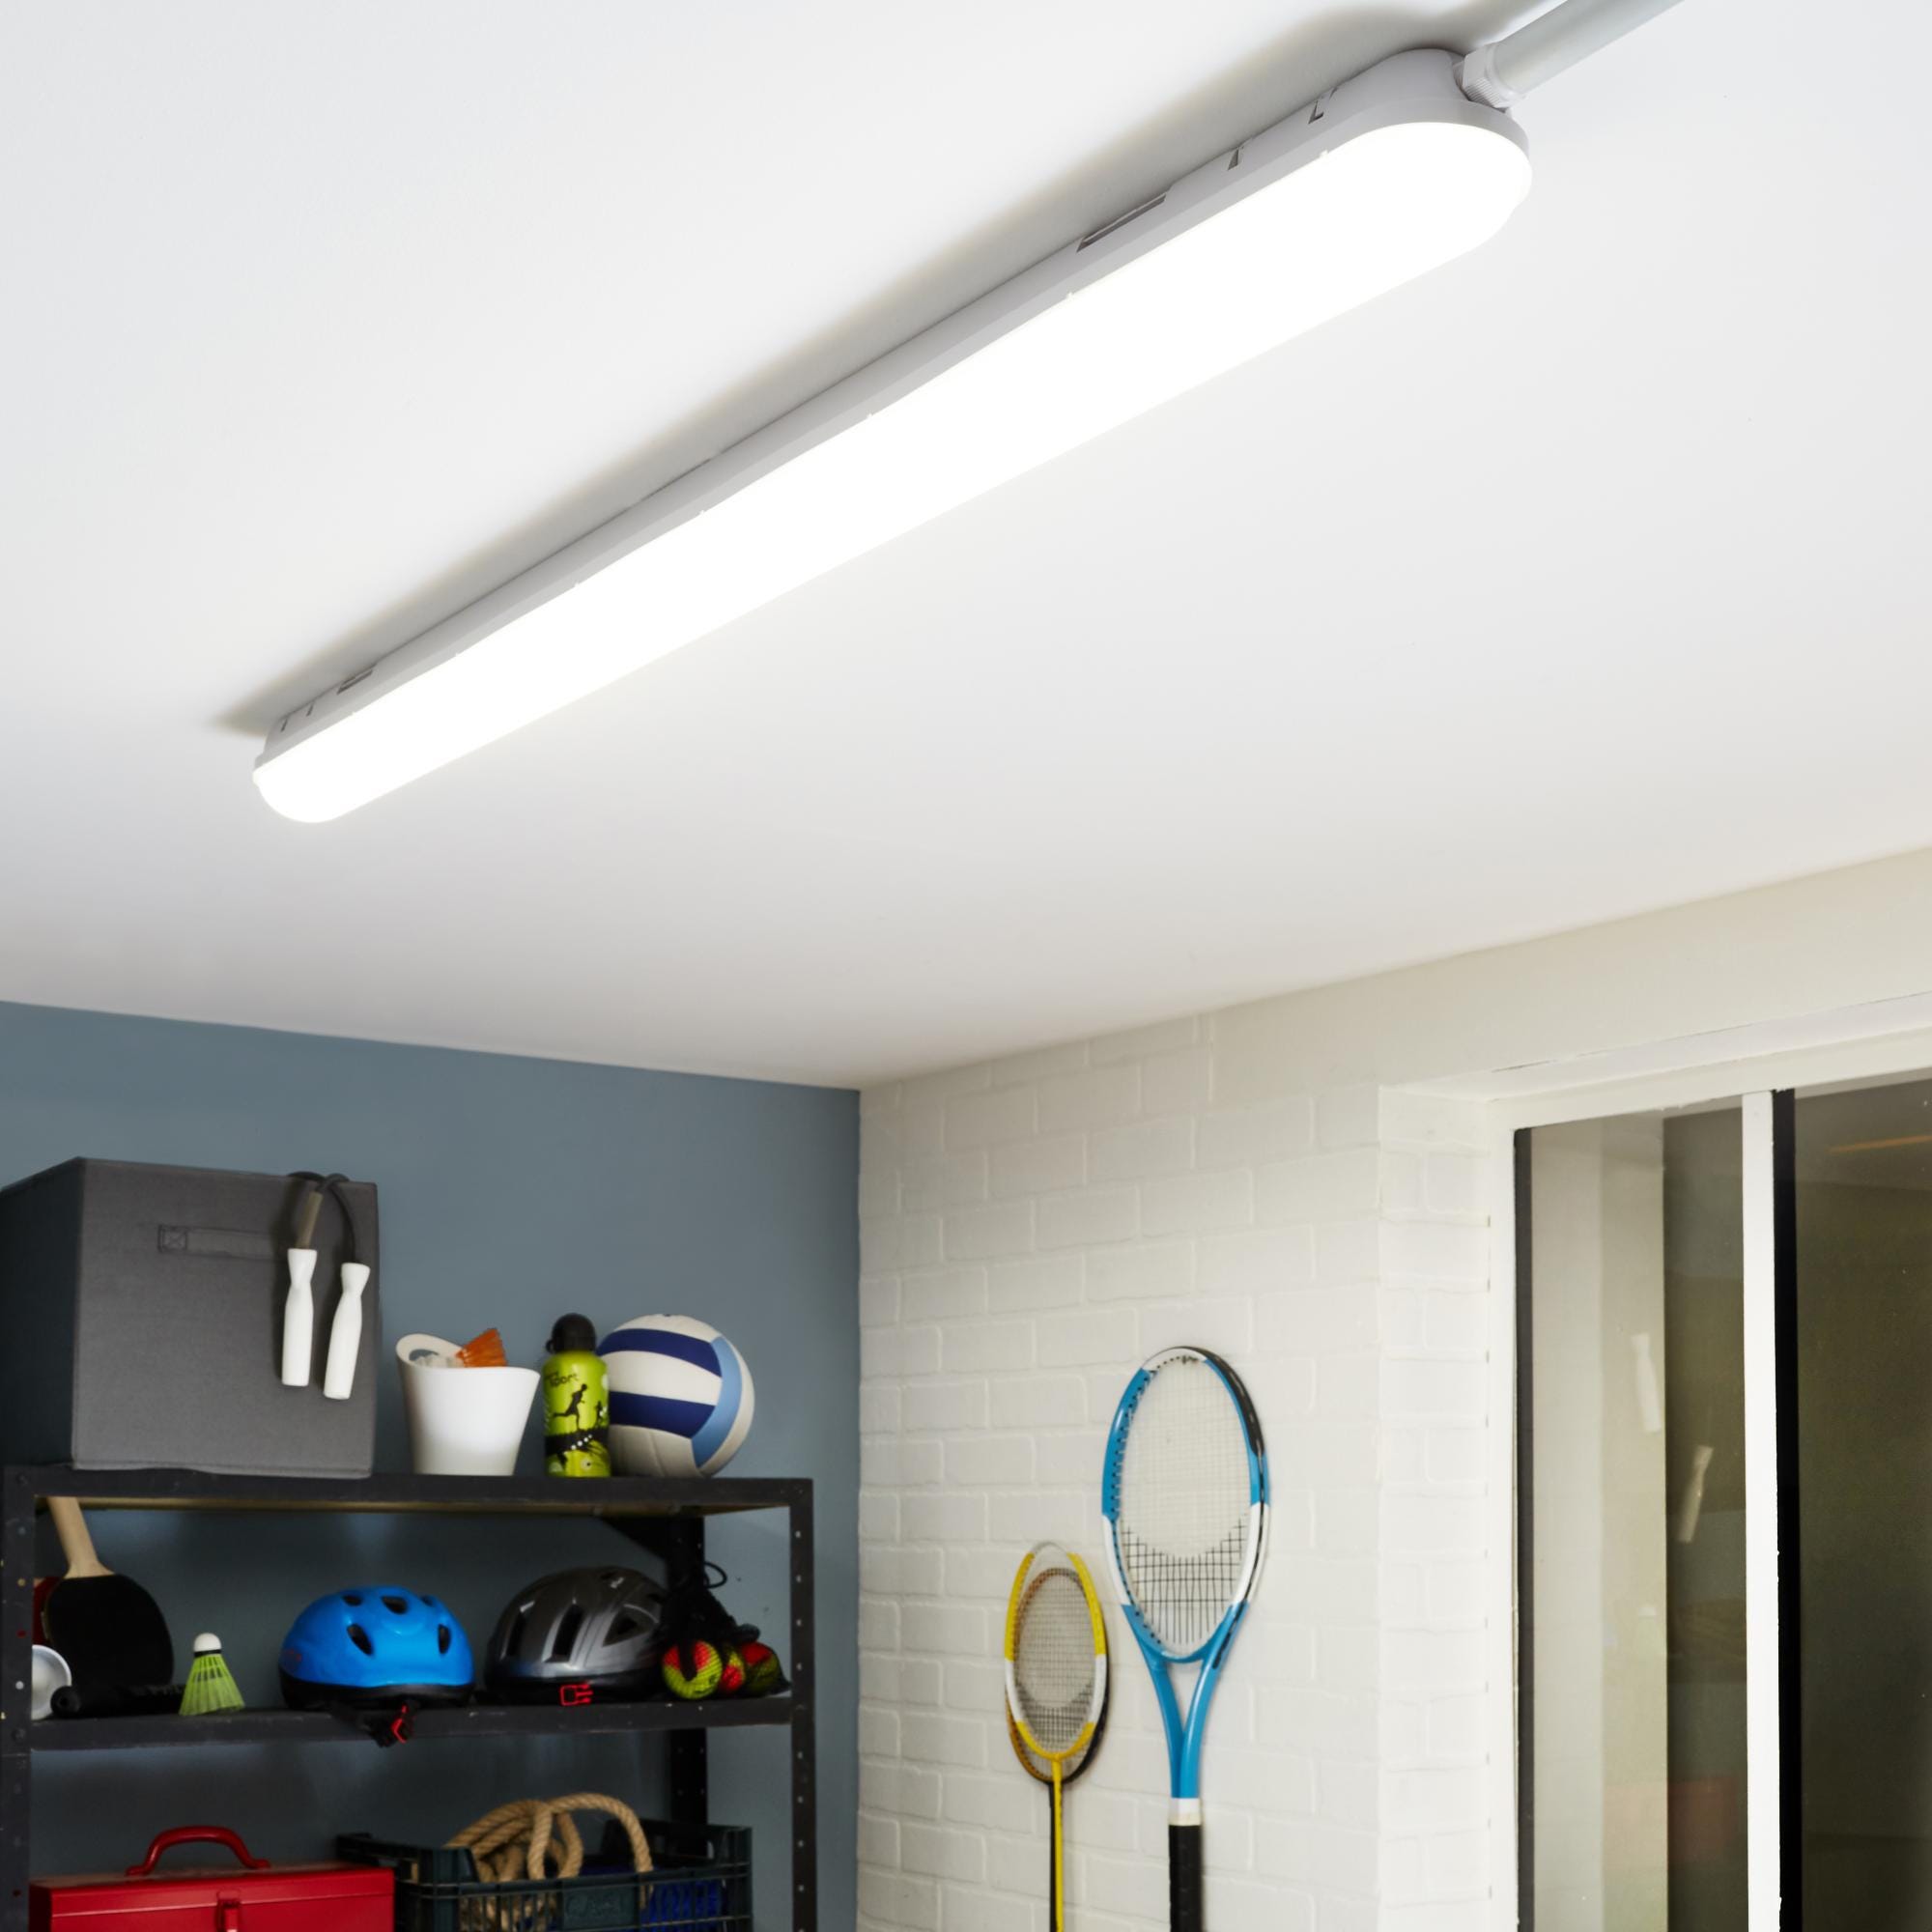 Réglette Dorni LED intégrée L.114.7 cm, 19 W, blanc neutre INSPIRE